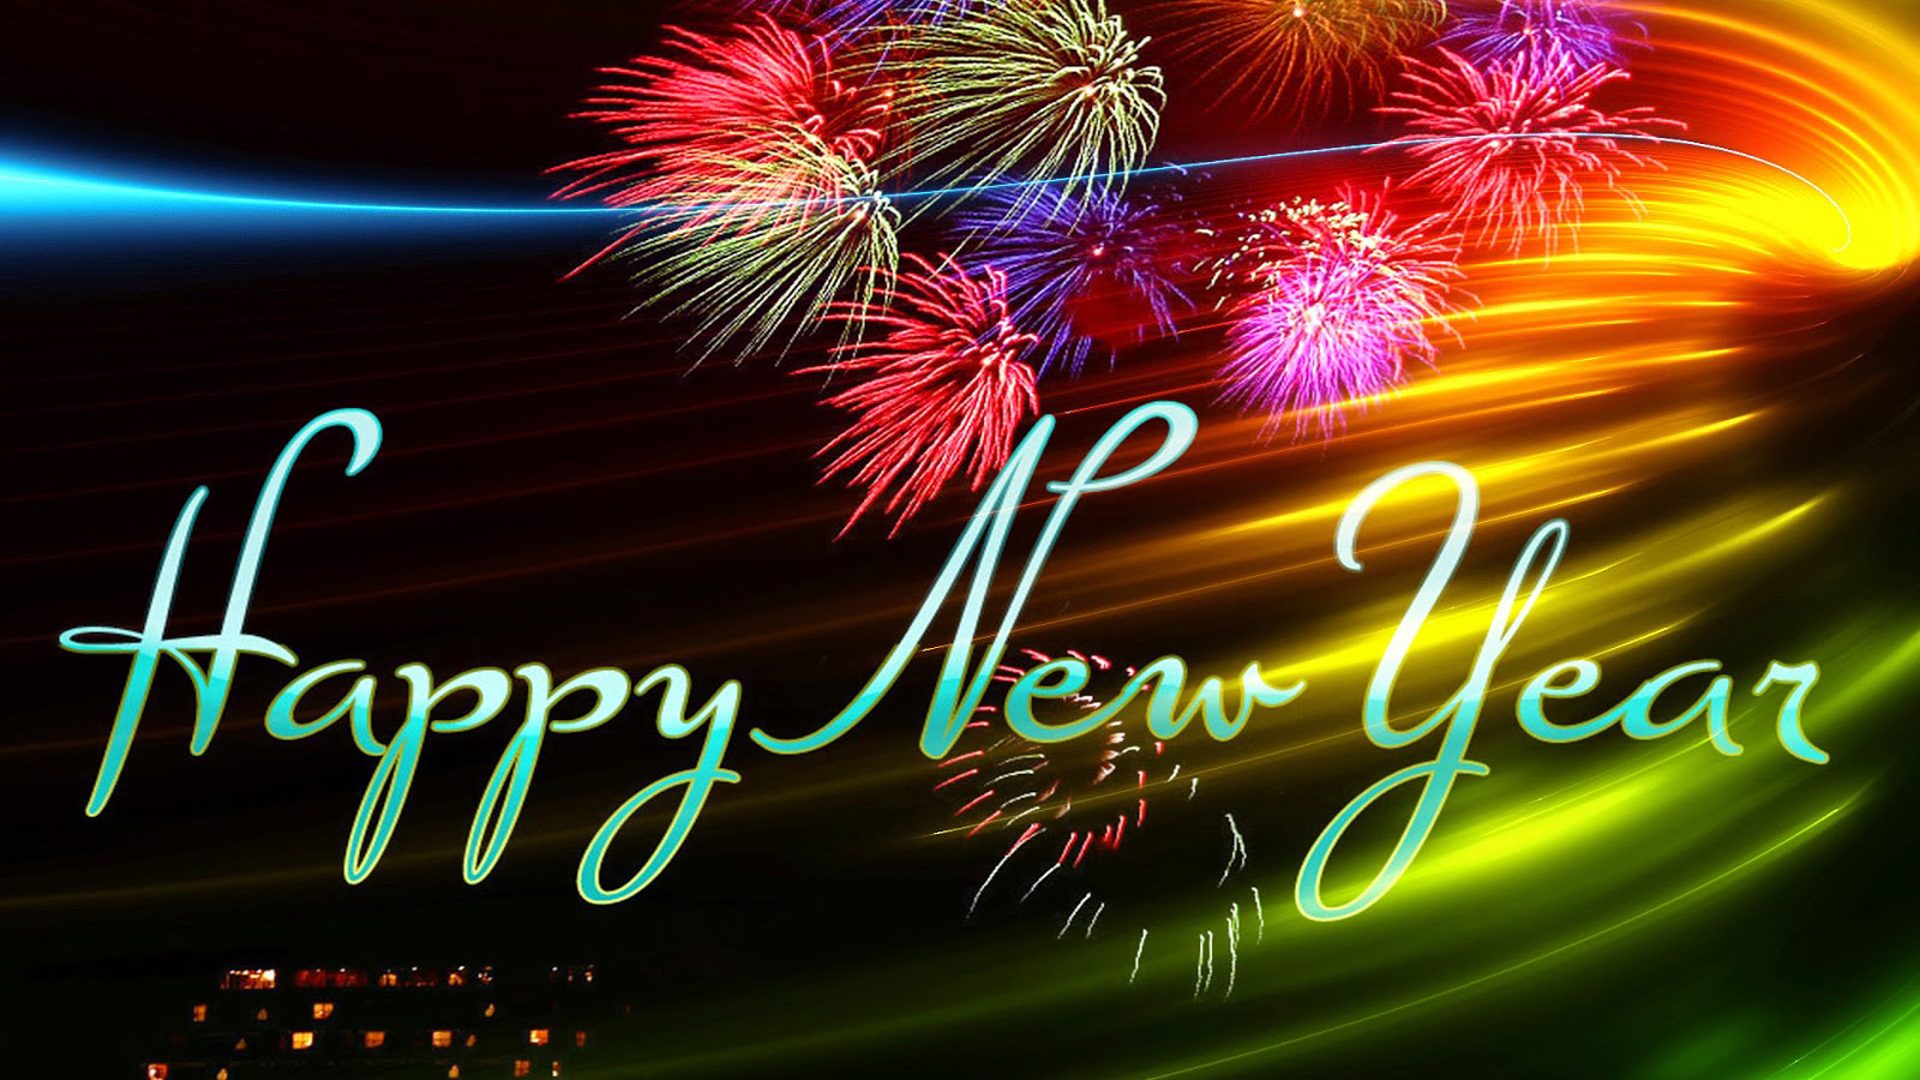 새해 복 많이 받으세요 hd 벽지,불꽃,설날,본문,새해,행사